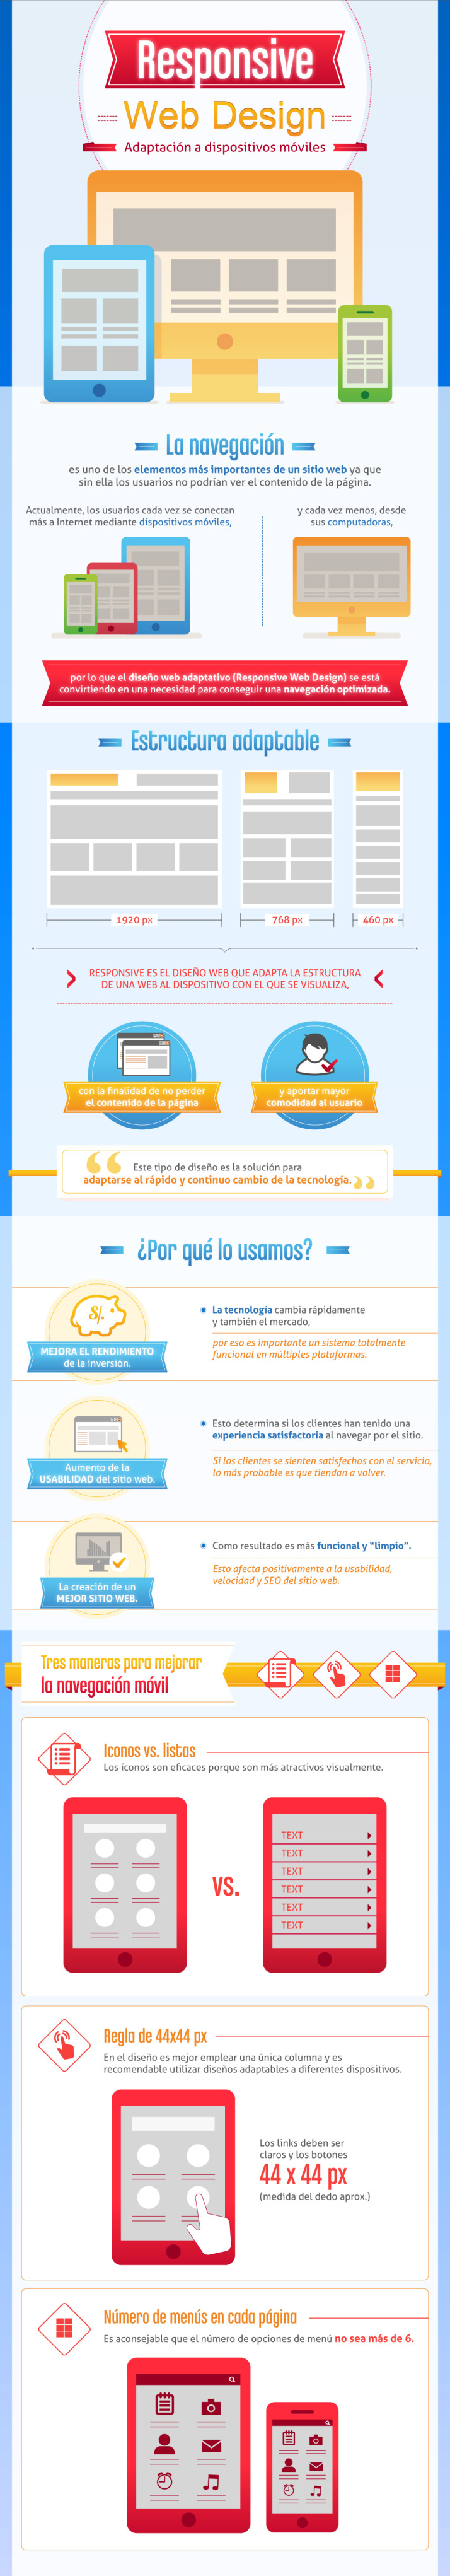 infografia_que_es_el_responsive_design_para_webs